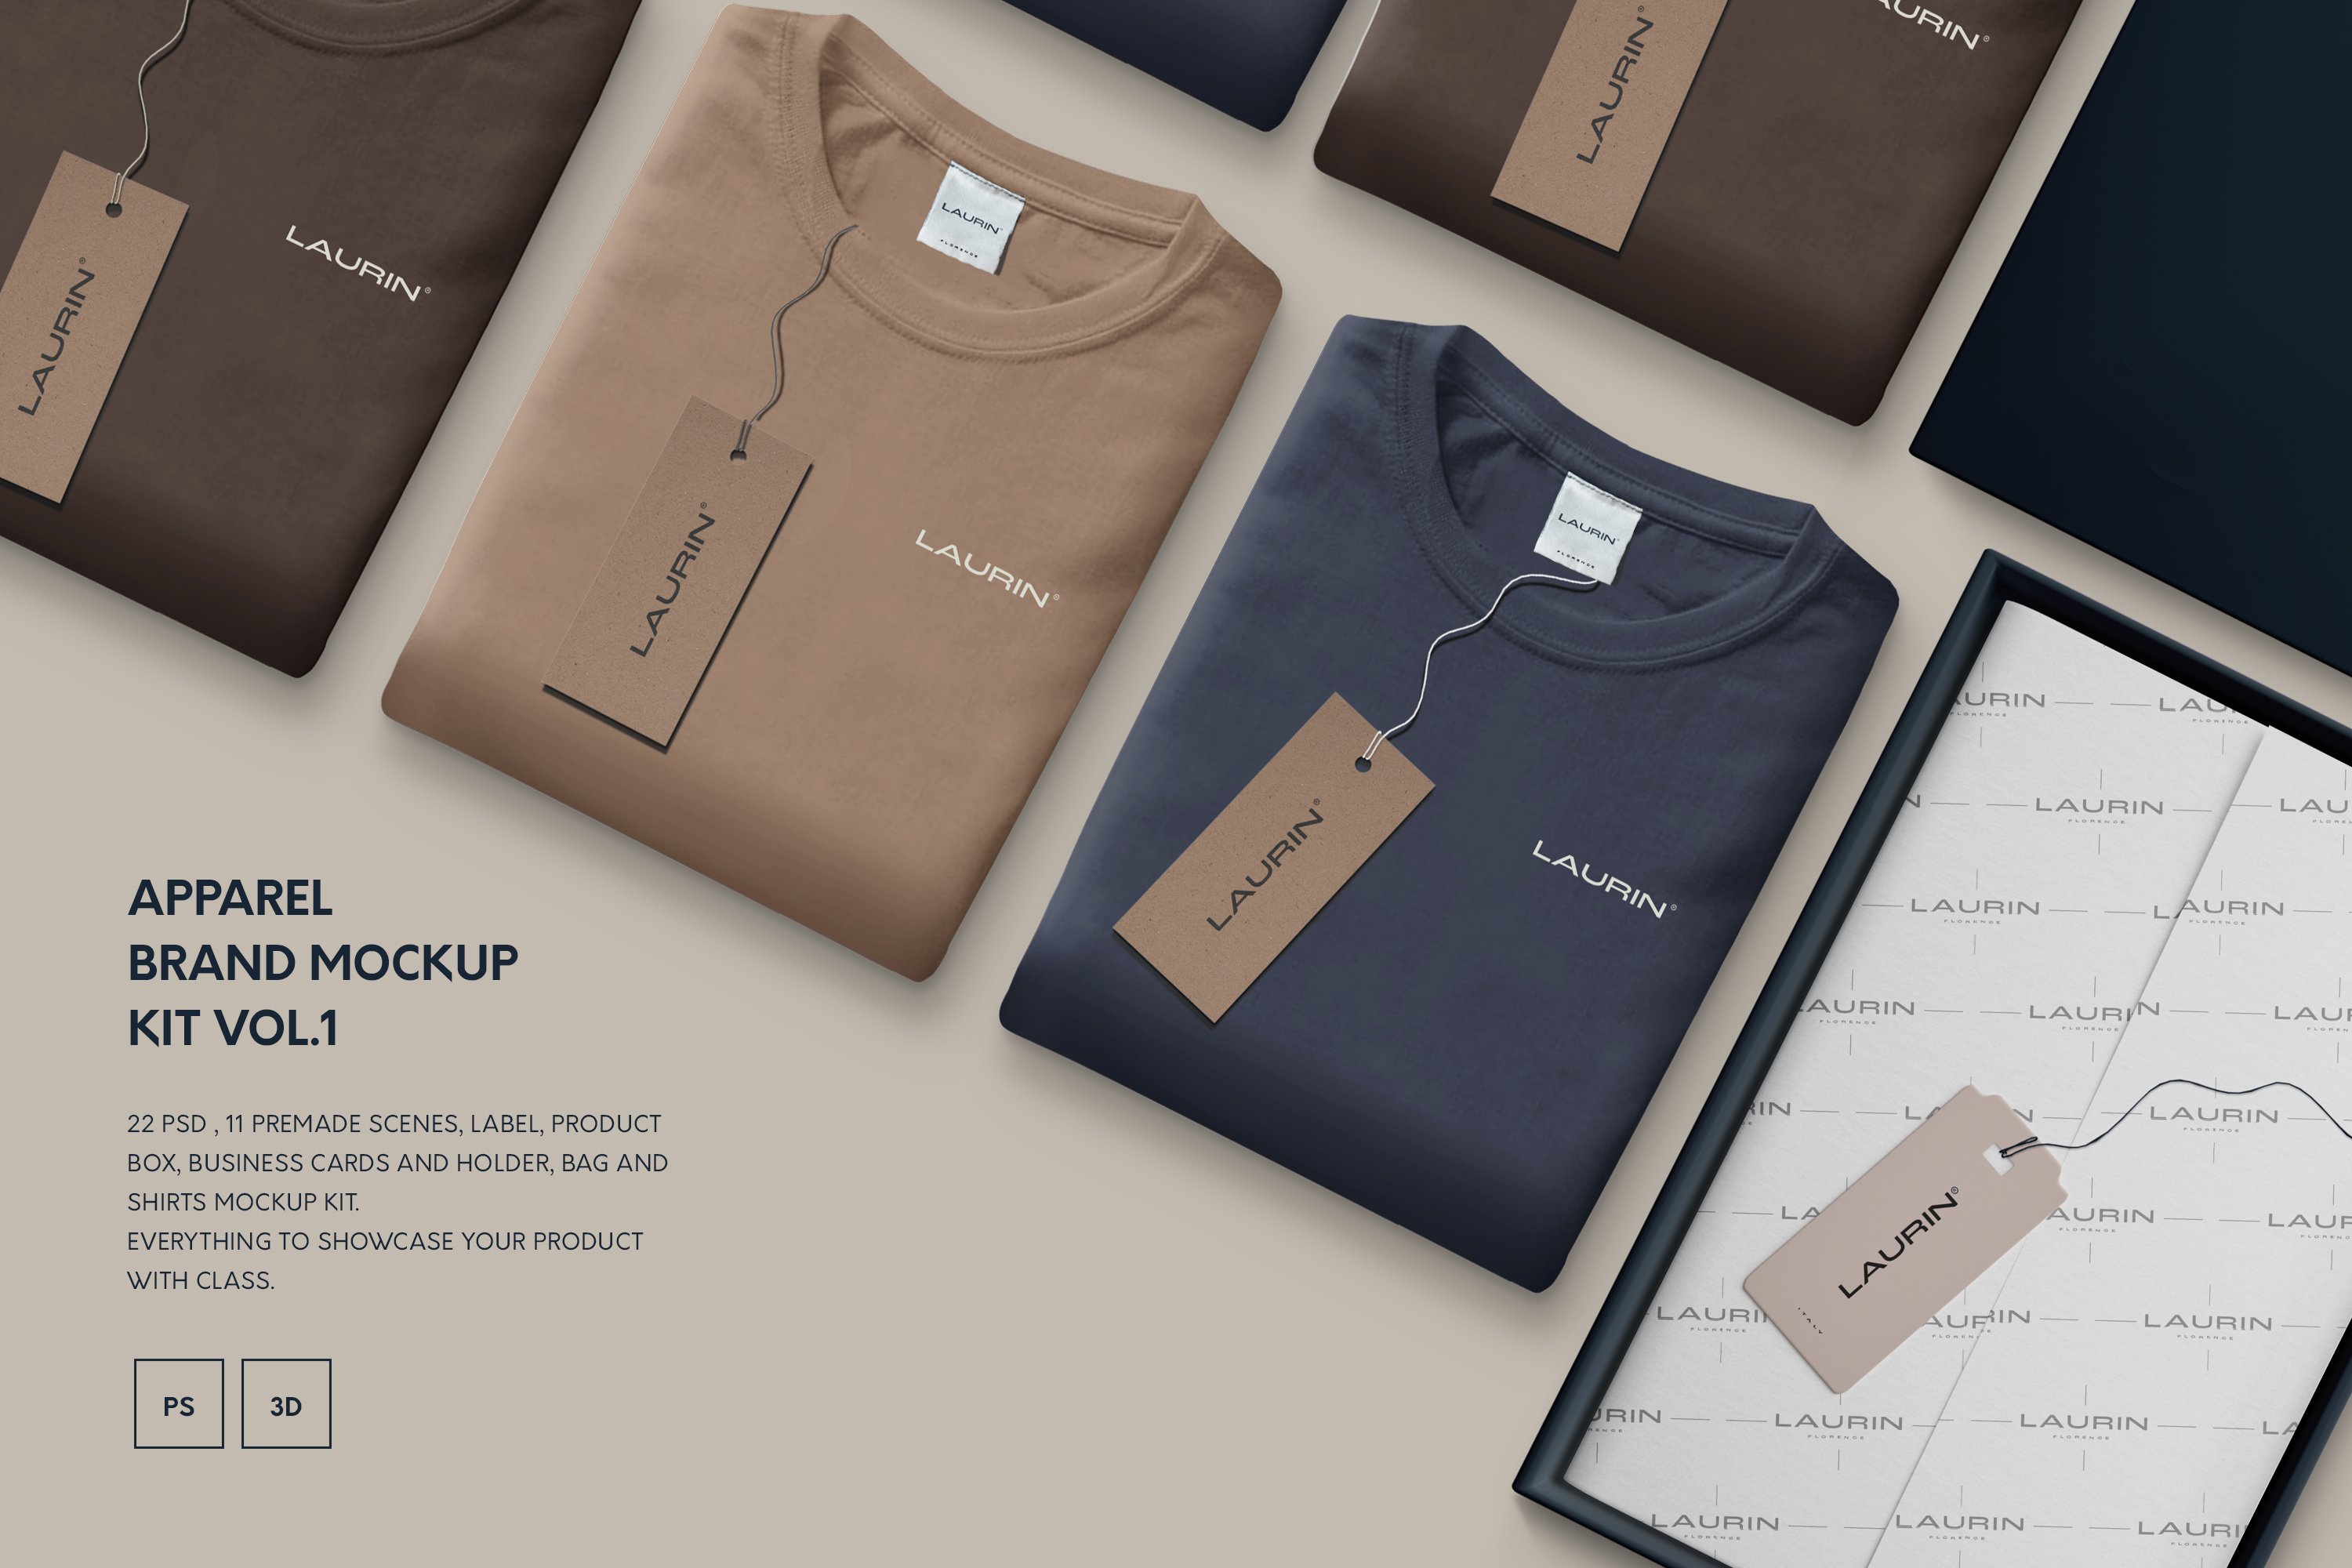 Apparel Brand Mockup Kit cover image.